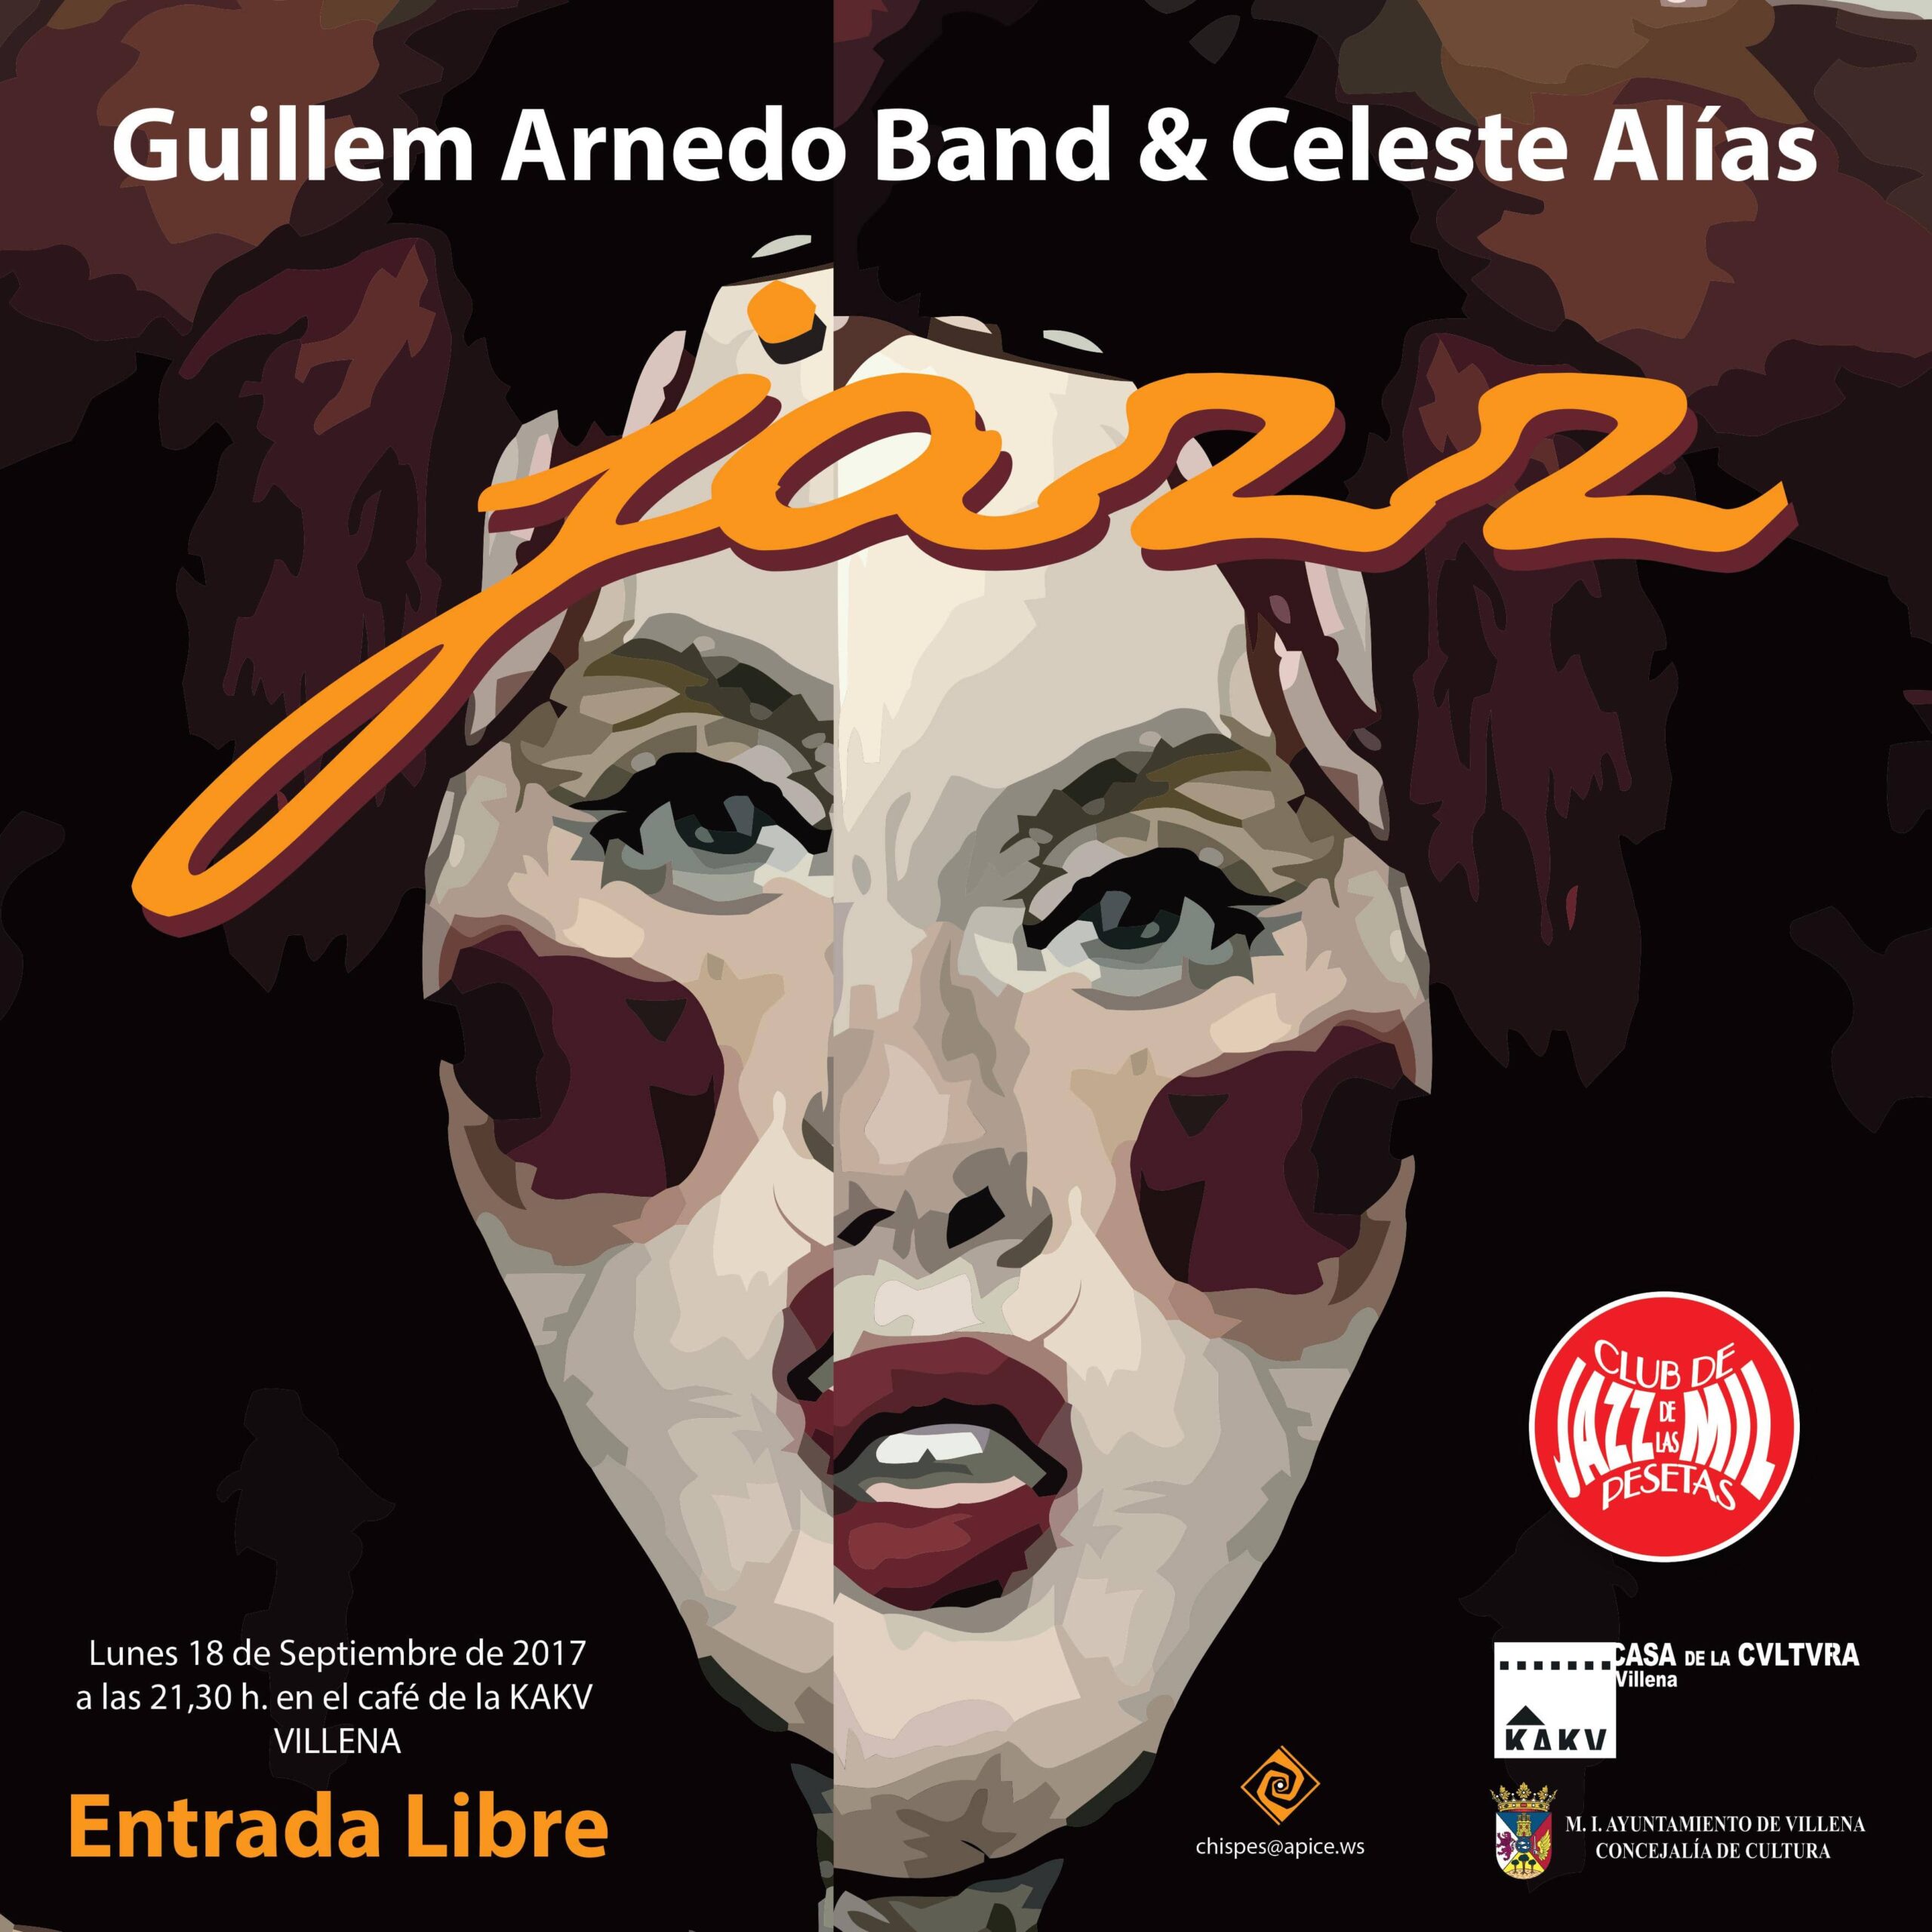 El Club de jazz de las Mil Pesetas retoma su programación con Guillem Arnedo Band & Celeste Alías